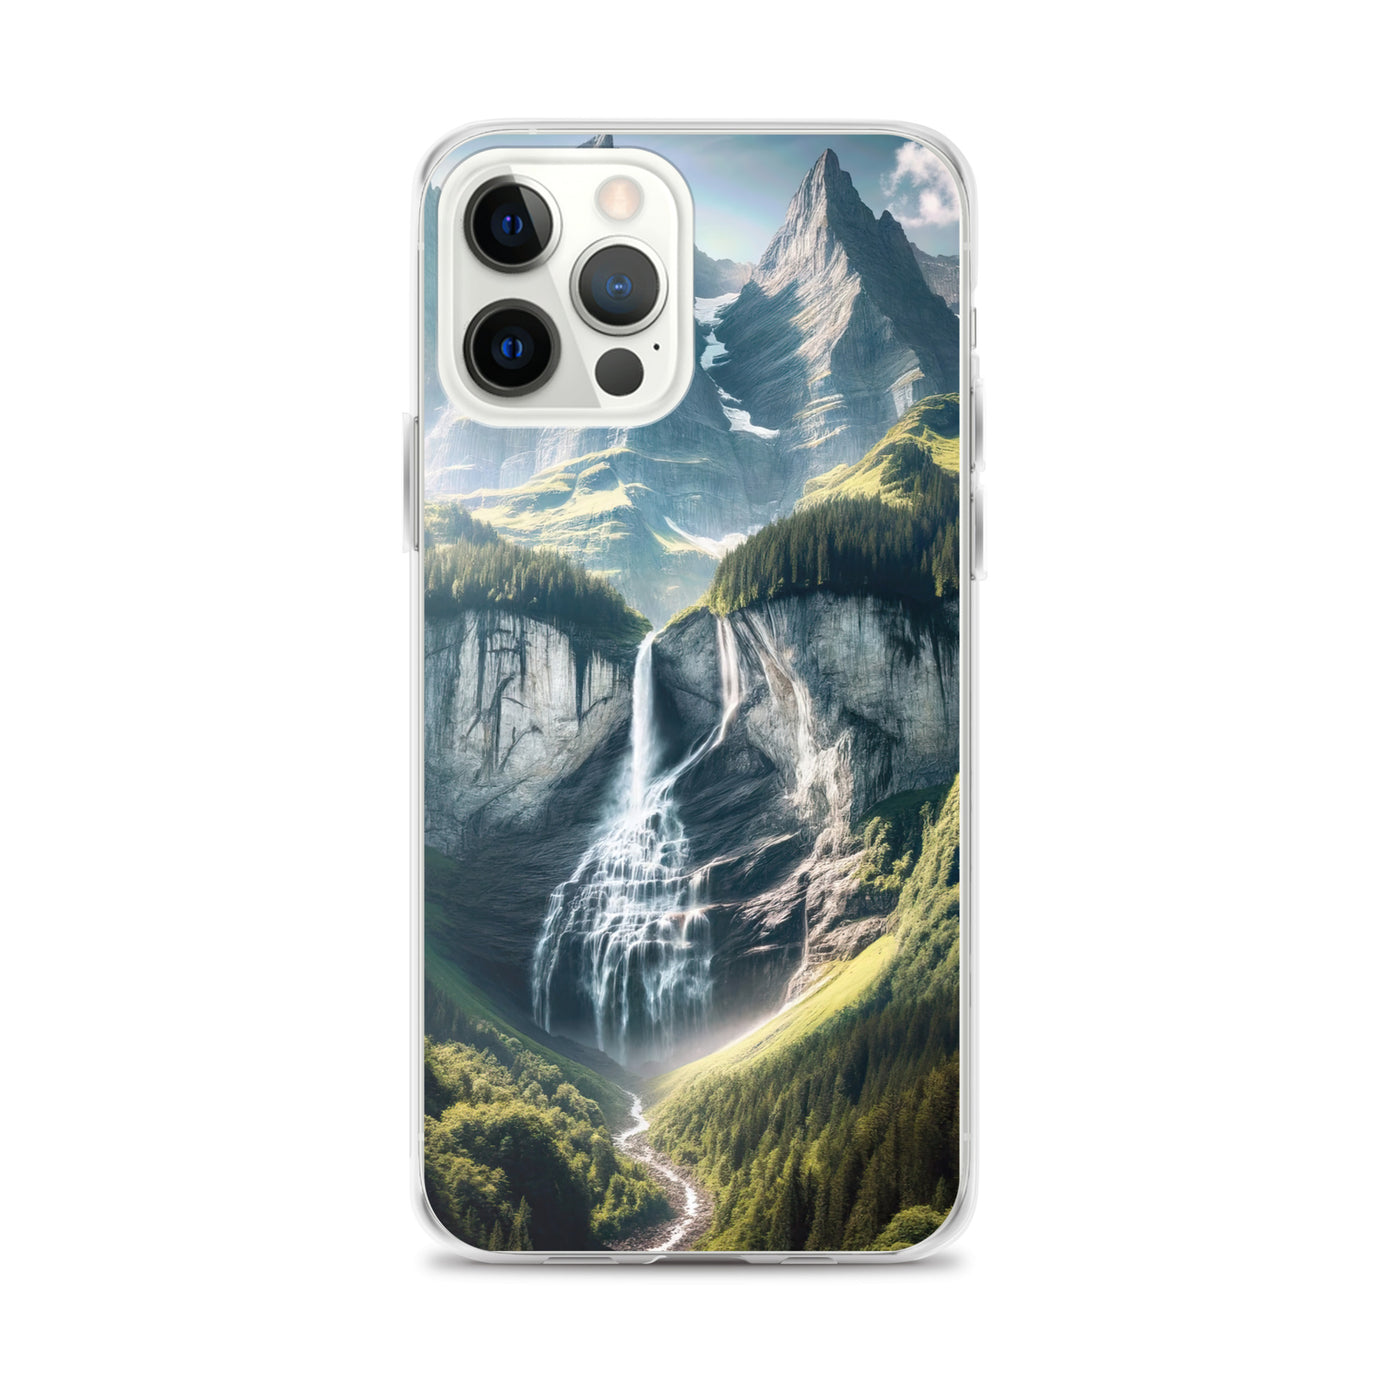 Foto der sommerlichen Alpen mit üppigen Gipfeln und Wasserfall - iPhone Schutzhülle (durchsichtig) berge xxx yyy zzz iPhone 12 Pro Max